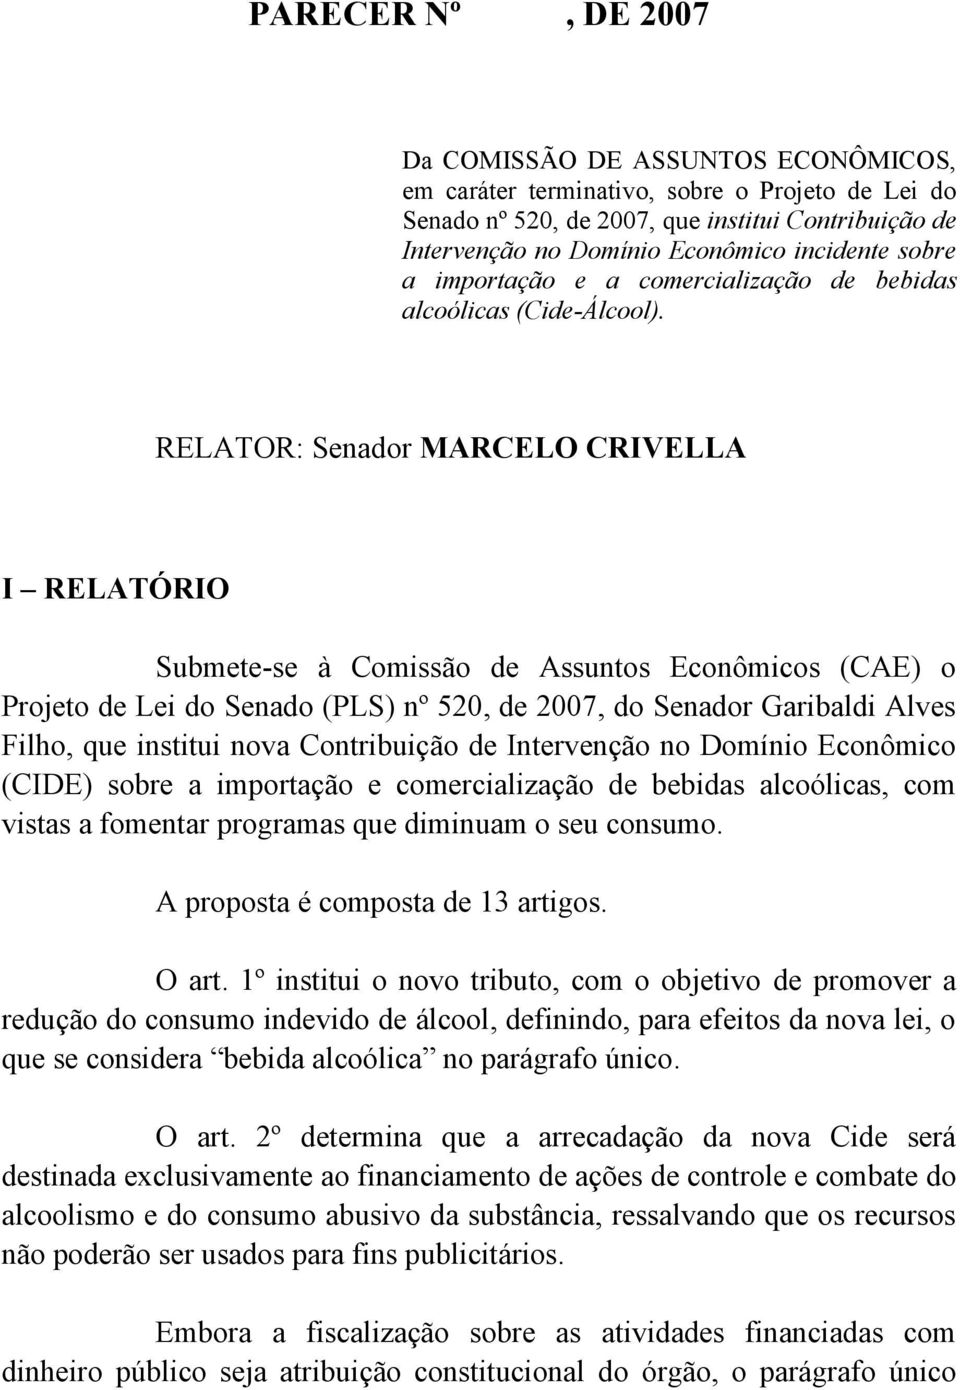 RELATOR: Senador MARCELO CRIVELLA I RELATÓRIO Submete-se à Comissão de Assuntos Econômicos (CAE) o Projeto de Lei do Senado (PLS) nº 520, de 2007, do Senador Garibaldi Alves Filho, que institui nova